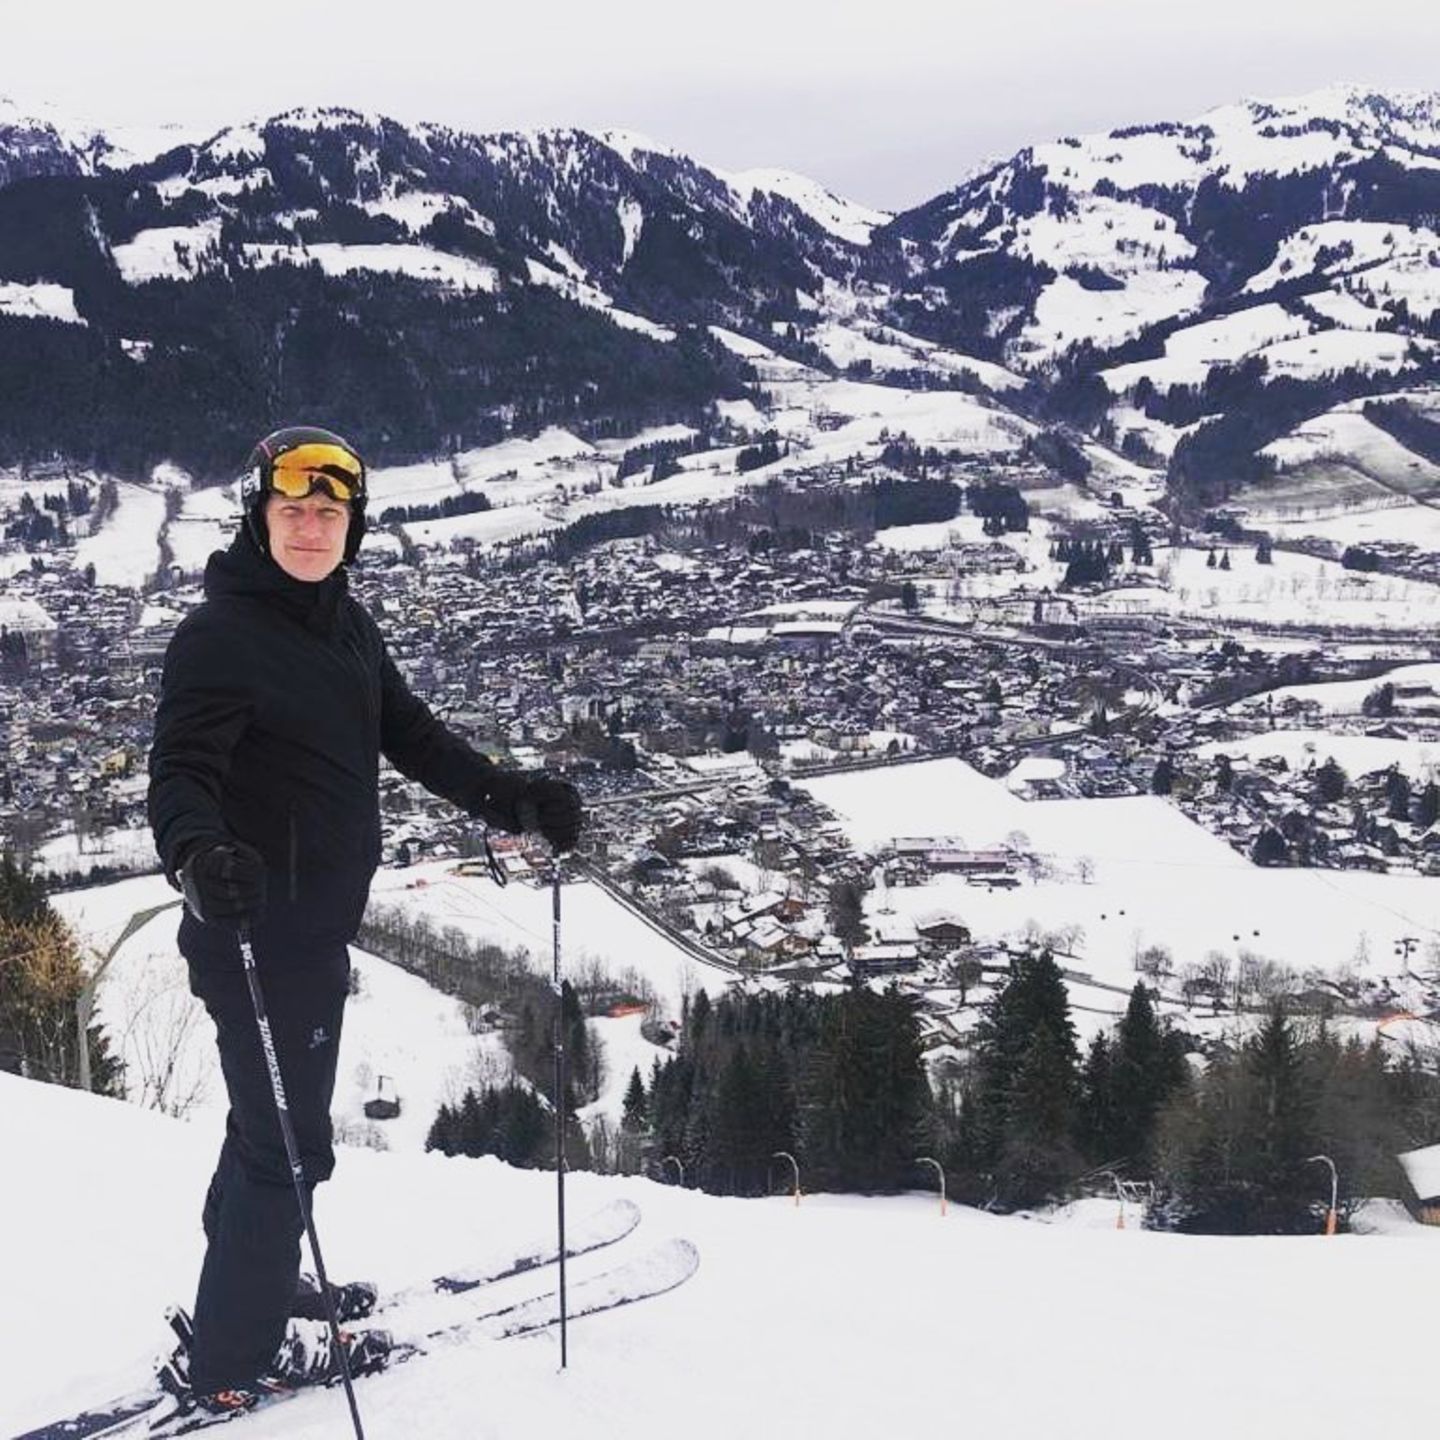 28. Februar 2020  "Immer noch flott unterwegs", schreibt Bastian Schweinsteiger zu diesem Foto aus dem Skiurlaub. Flott ist er hier gerade zwar nicht unterwegs, aber ein kurzes Verschnaufpäuschen muss ja auch mal drin sein. Wir finden, auf Skiern macht er eine mindestens genauso gute Figur wie auf dem Fußballplatz.